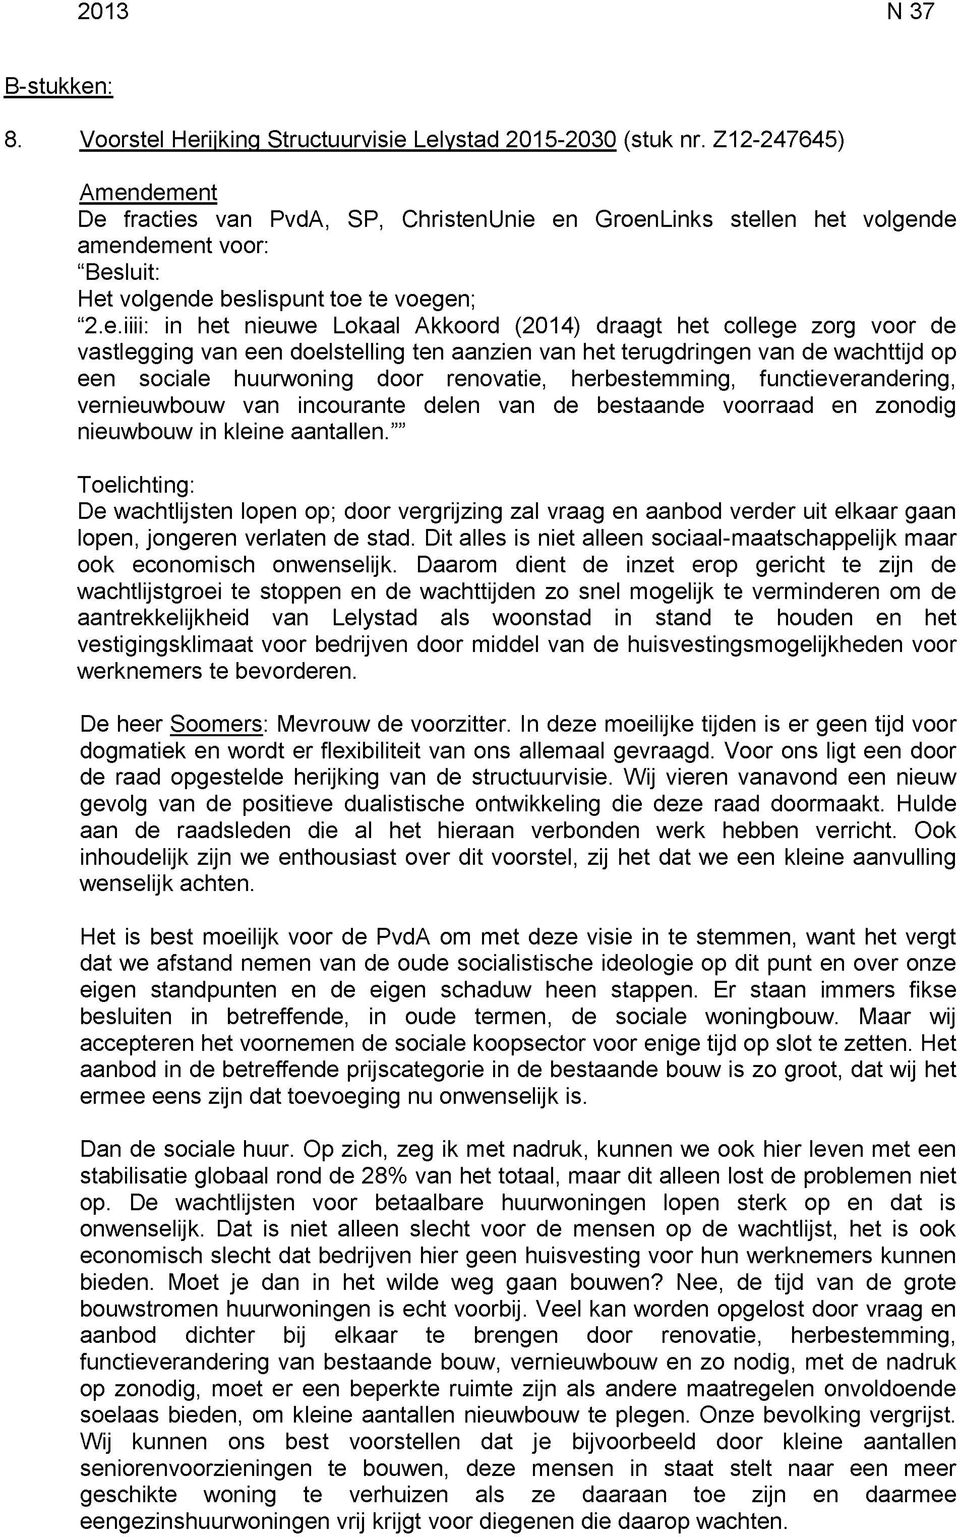 dement De fracties van PvdA, SP, ChristenUnie en GroenLinks stellen het volgende amendement voor: "Besluit: Het volgende beslispunt toe te voegen; "2.e.iiii: in het nieuwe Lokaal Akkoord (2014)